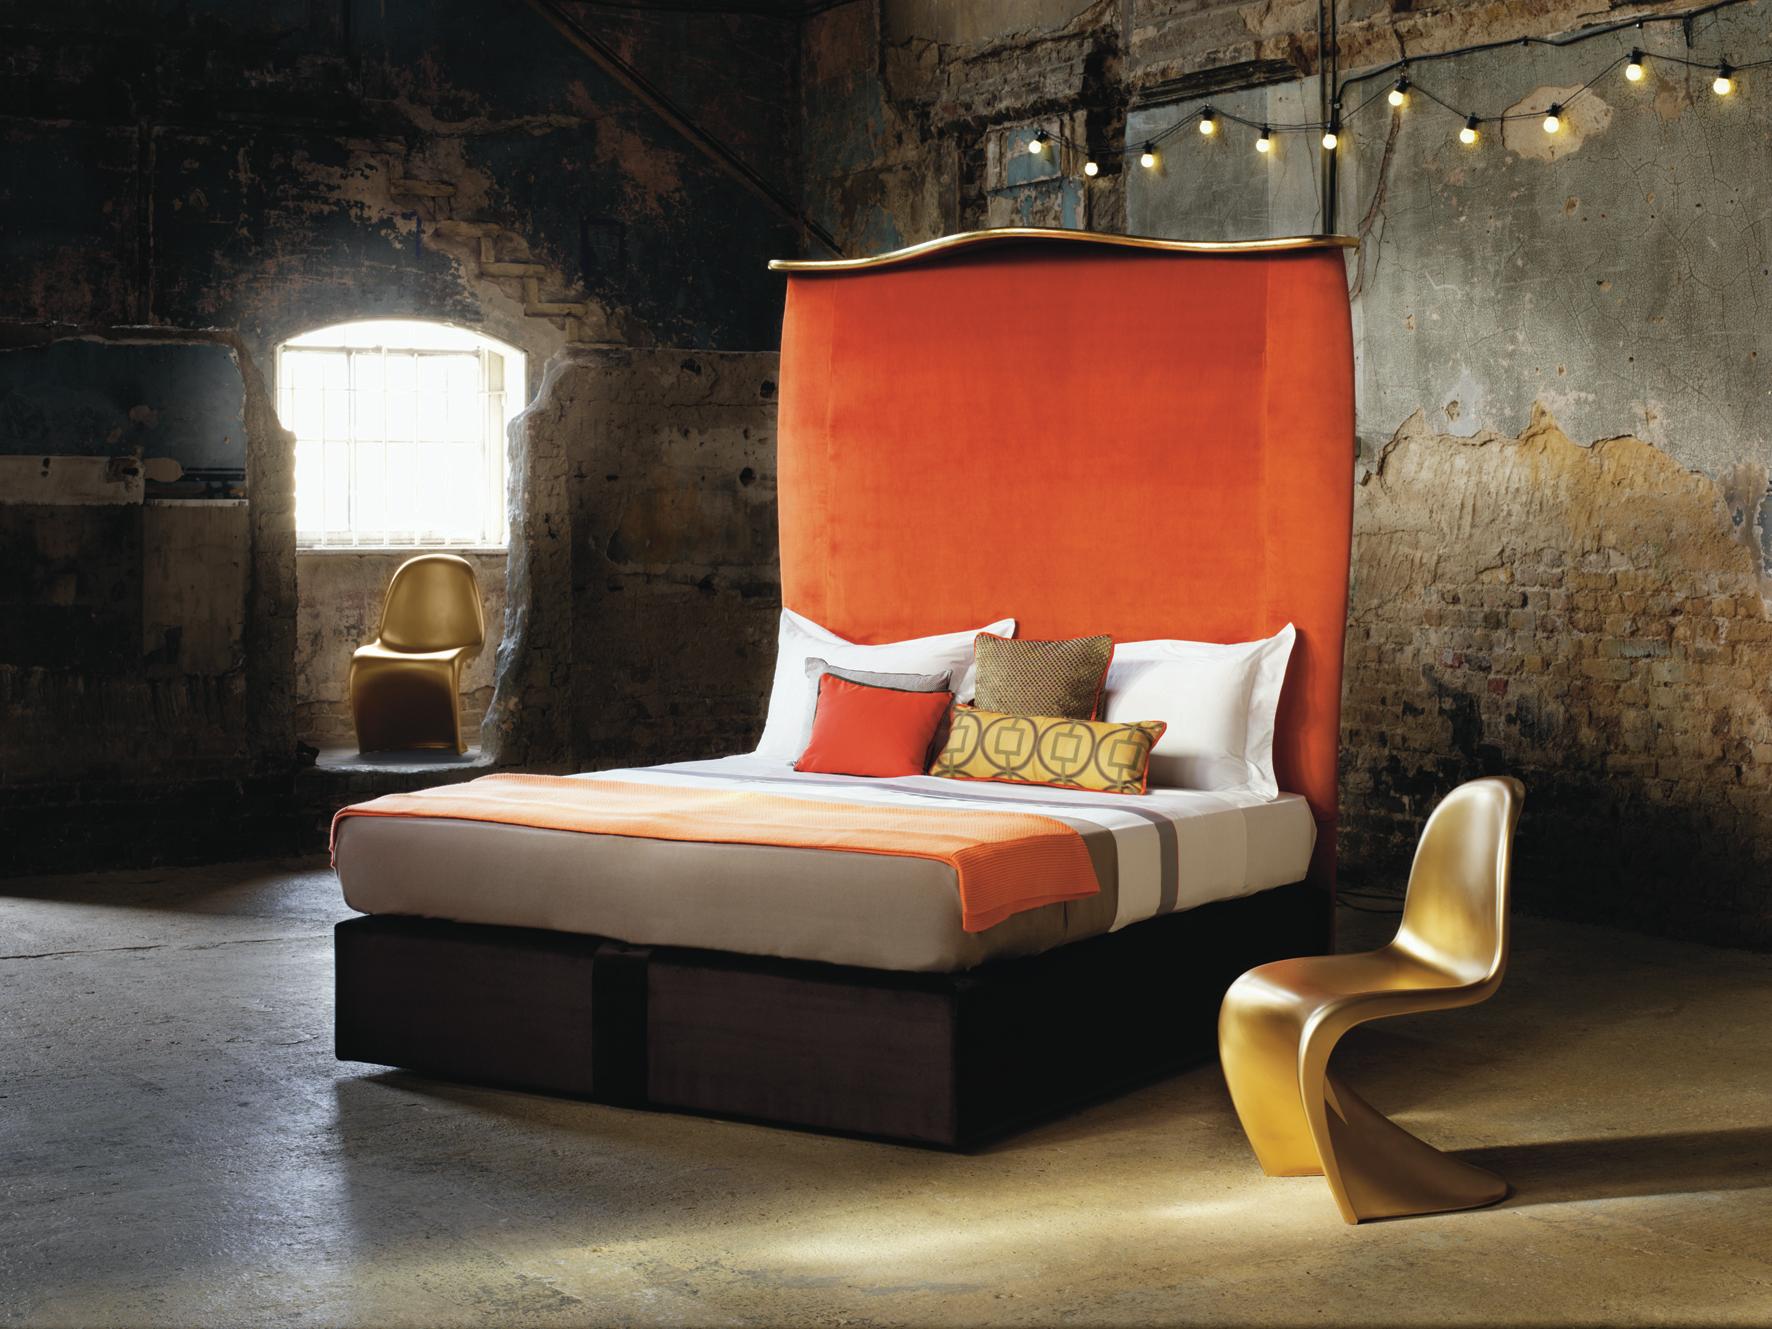 Nicky Haslam, eine der einflussreichsten Innenarchitektinnen Großbritanniens, ist bekannt für hochwertiges Design, maßgefertigte Möbel und einen ständig wechselnden Stil. Seine Collaboration für Savoir hat ein atemberaubendes Bett mit einem